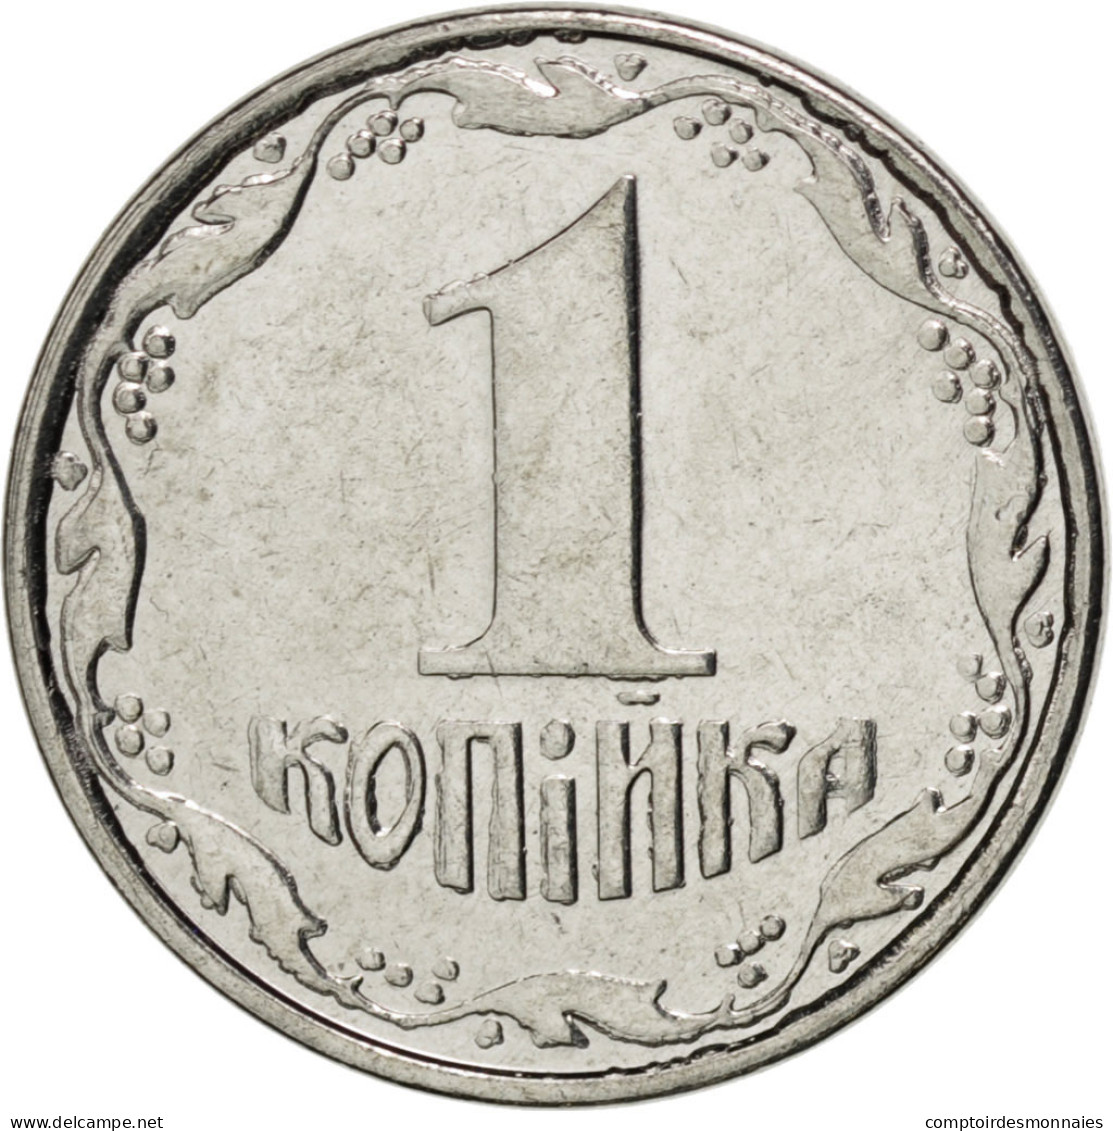 Monnaie, Ukraine, Kopiyka, 2008, SPL, Stainless Steel, KM:6 - Ukraine